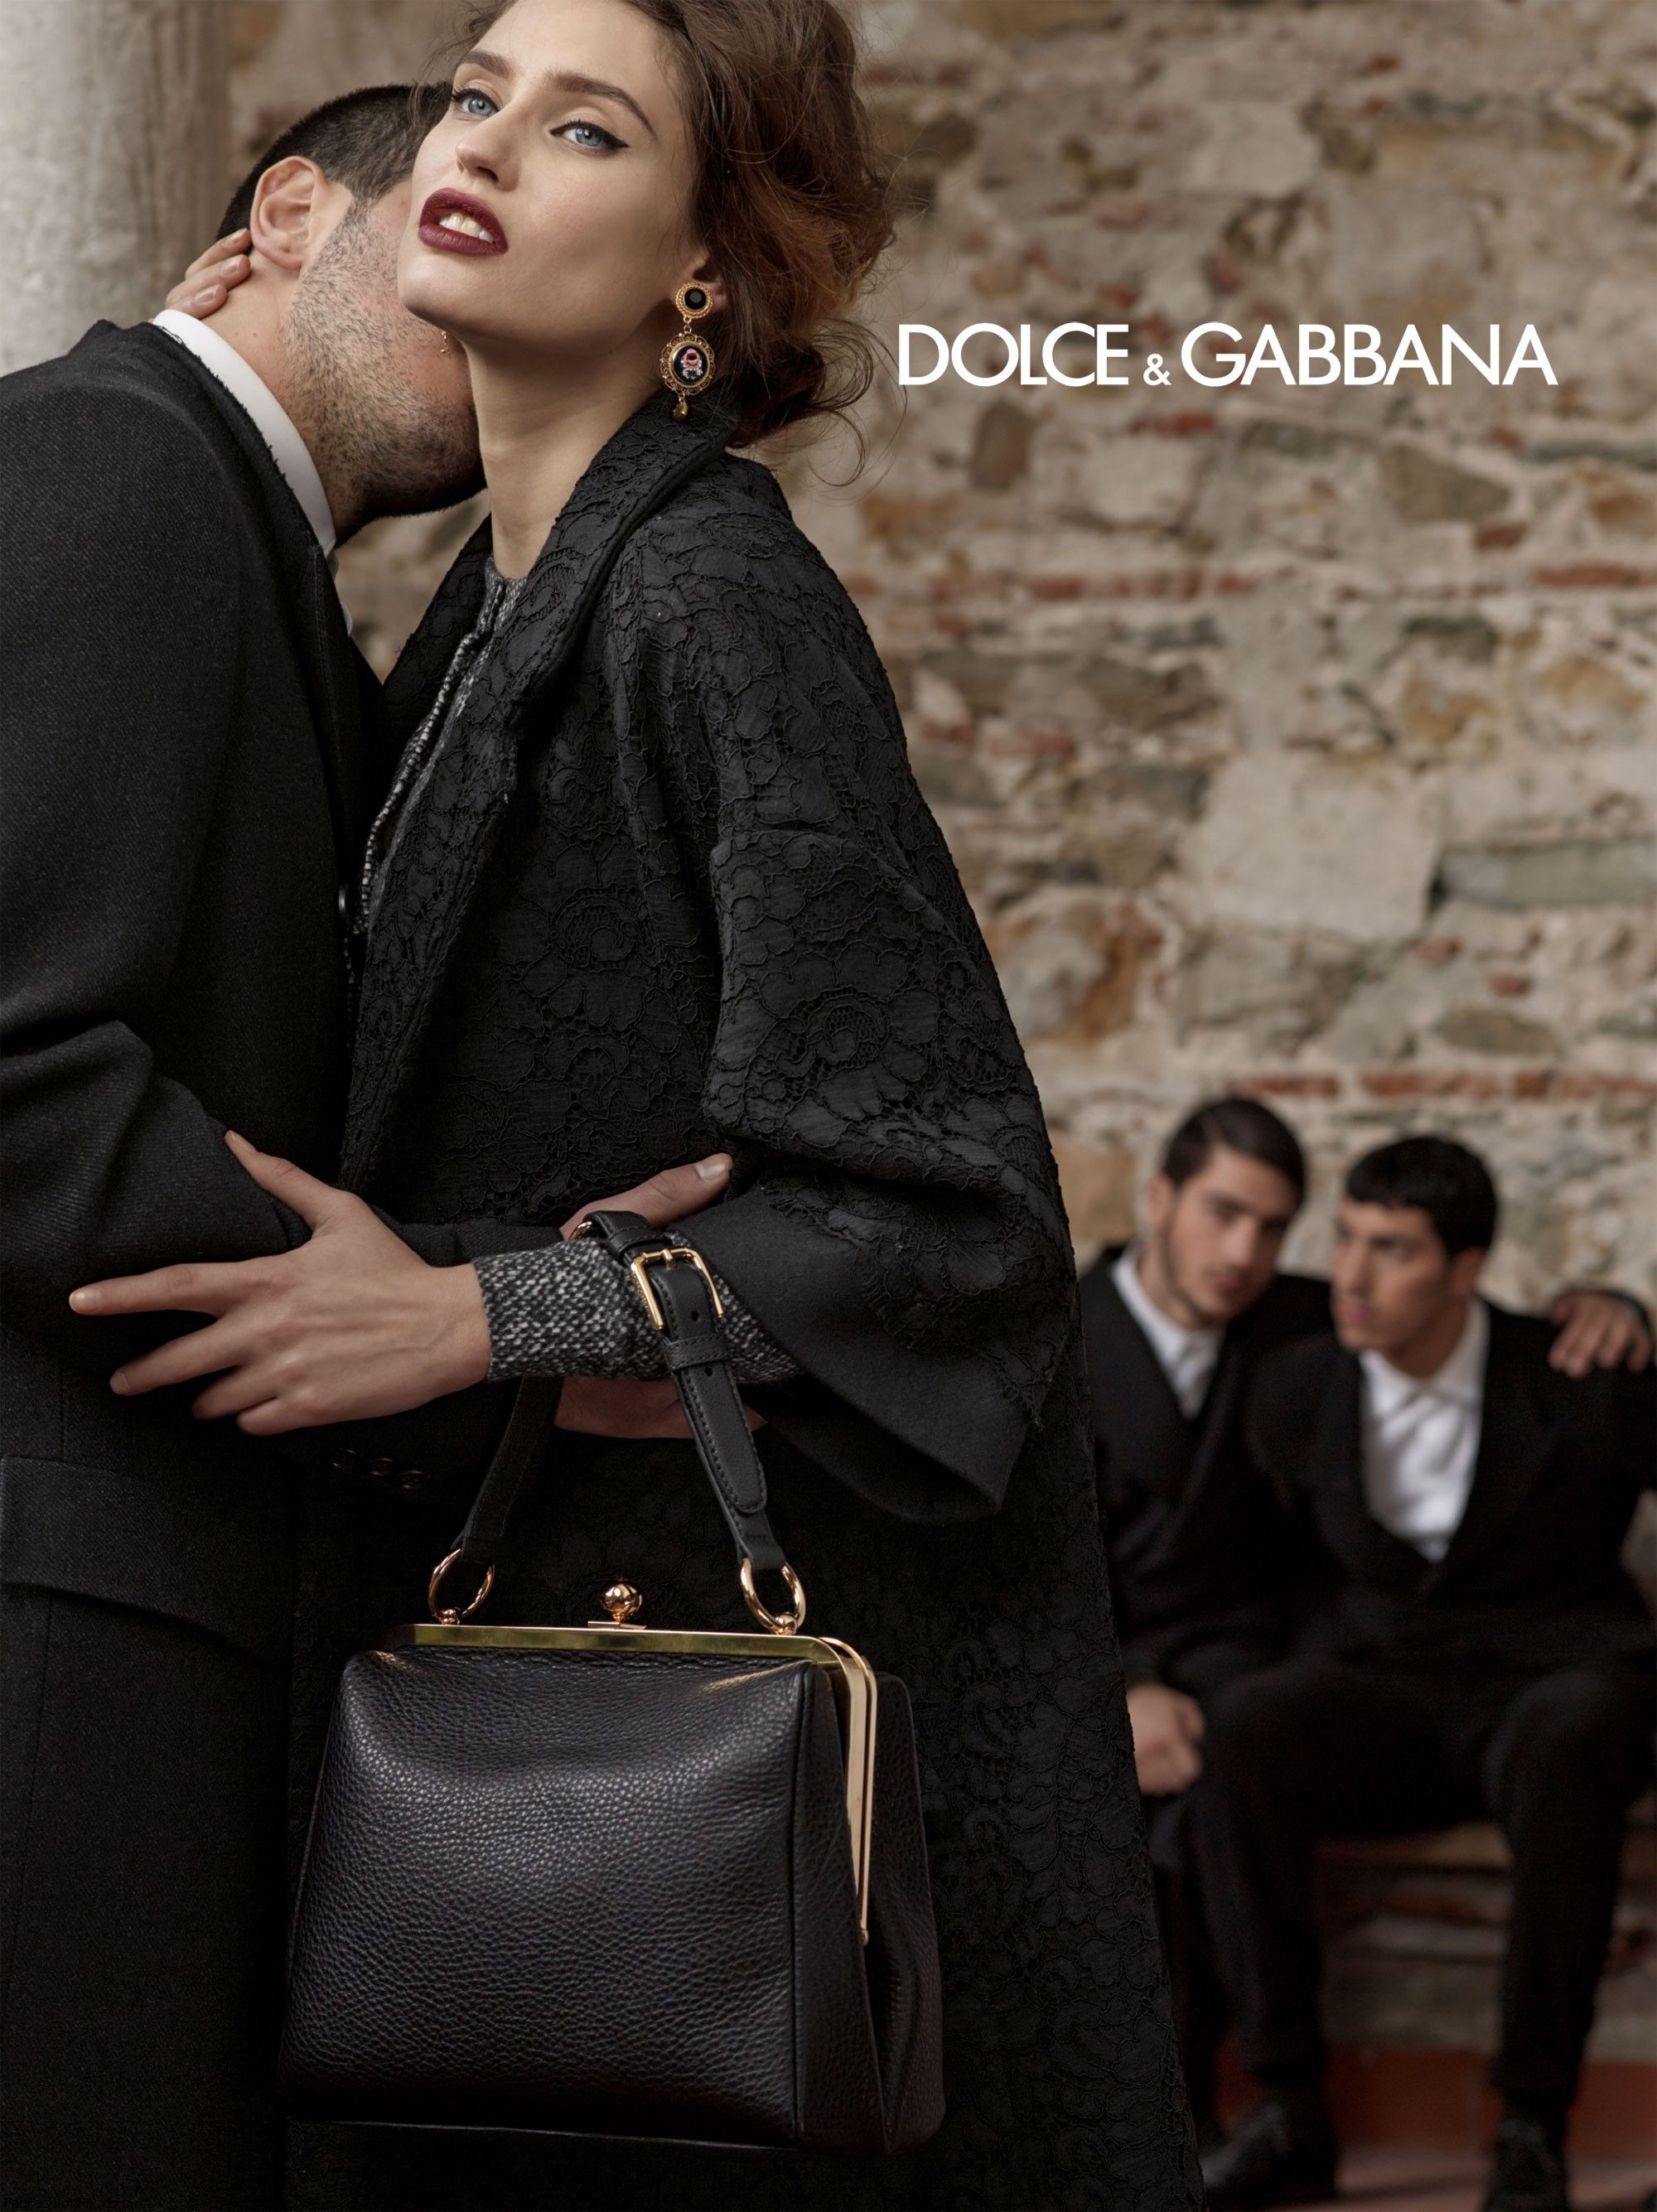 Дольче габбана спб. Сицилийская вдова Dolce Gabbana Бьянка Балти. Dolce Gabbana 2021 Бьянка Балти.